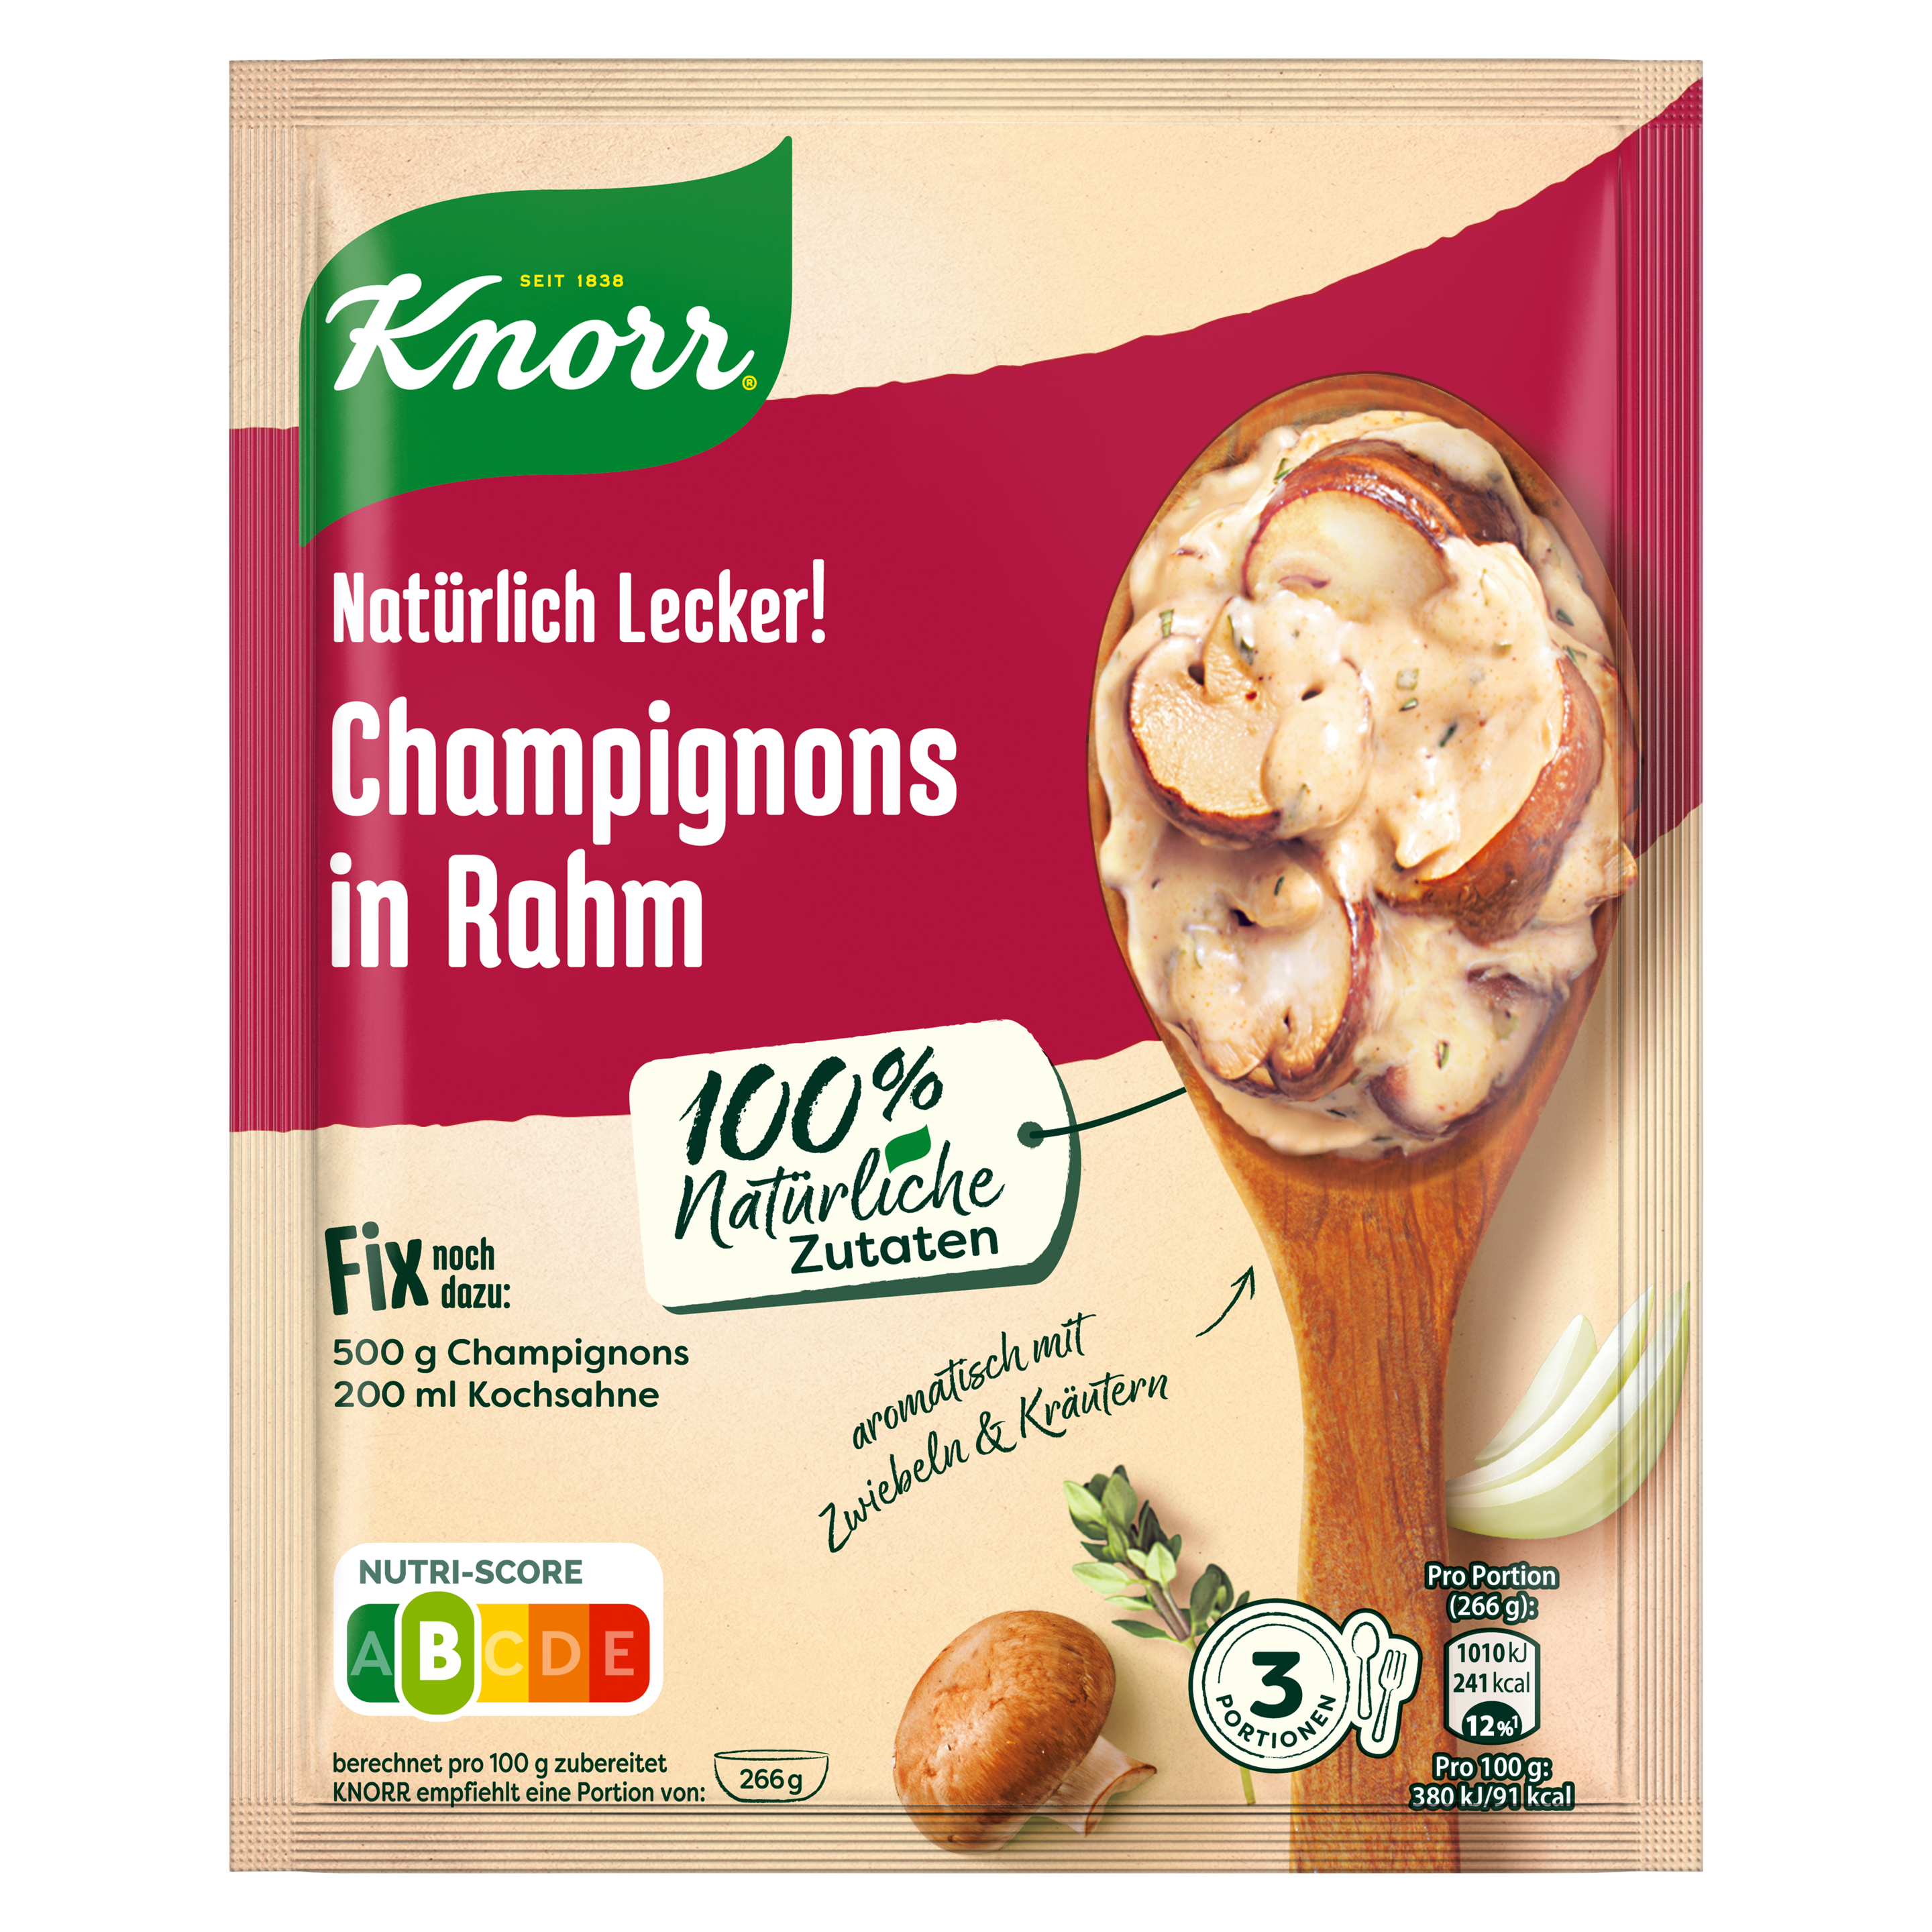 Knorr Natürlich Lecker! Champignon in Rahm 30 g